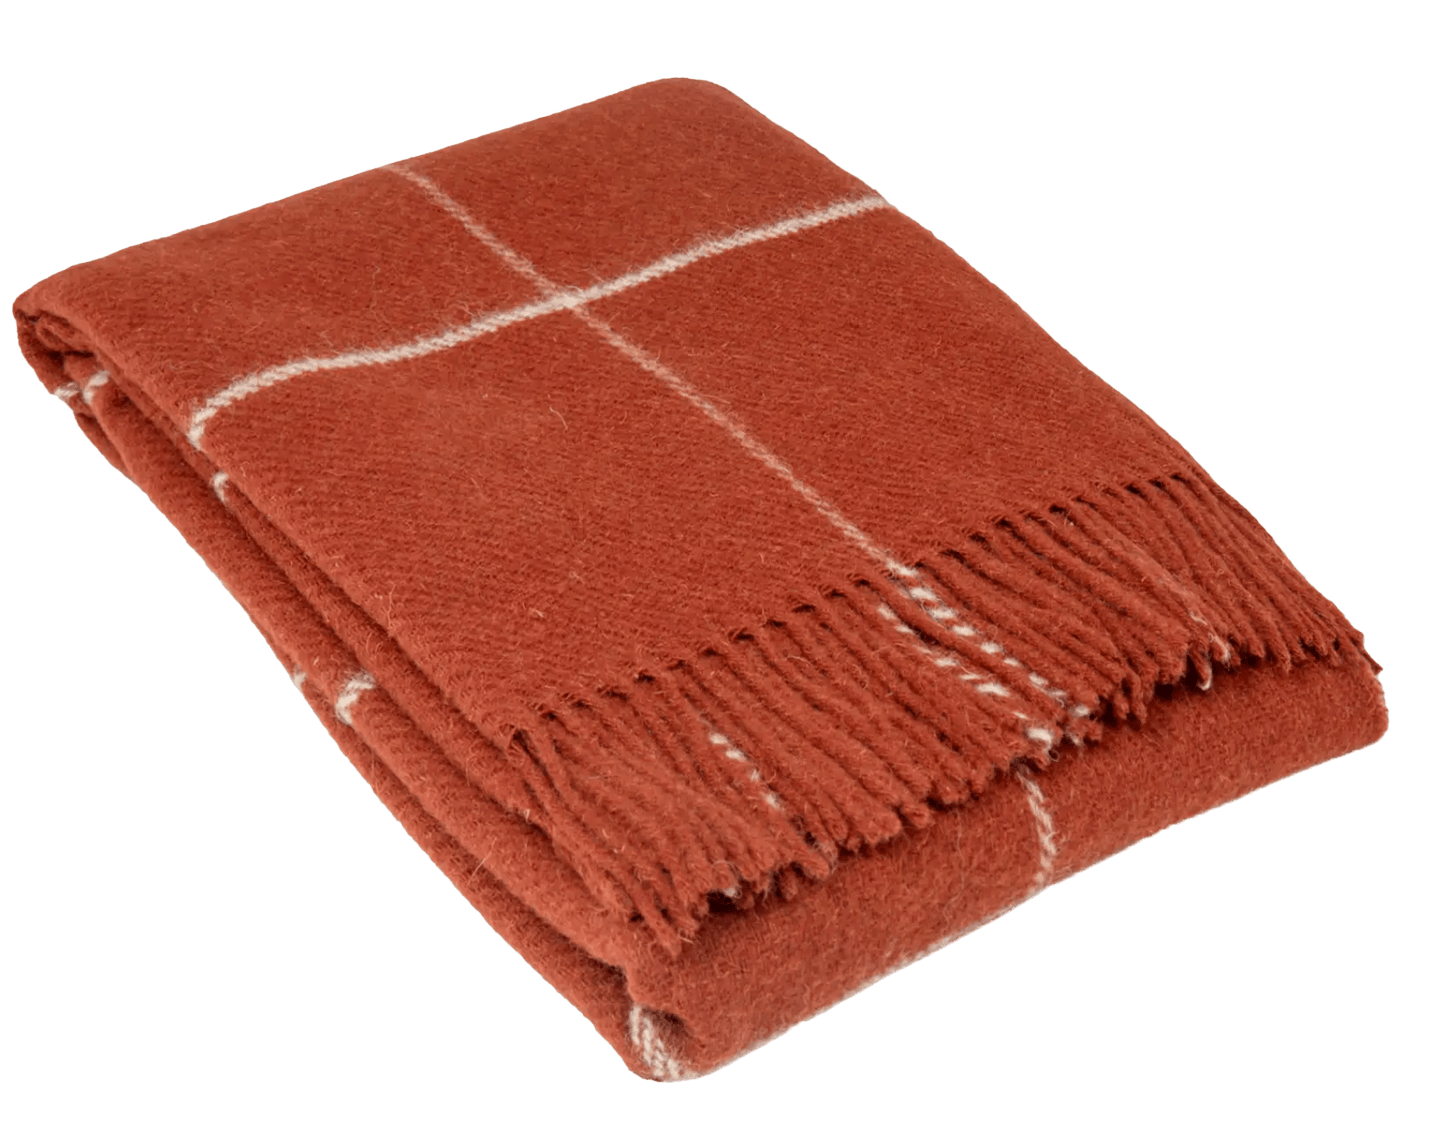 Uldplaiden Uldplaid Uldplaid i 100% uld - Rust rød (140x200 cm) otherstuff